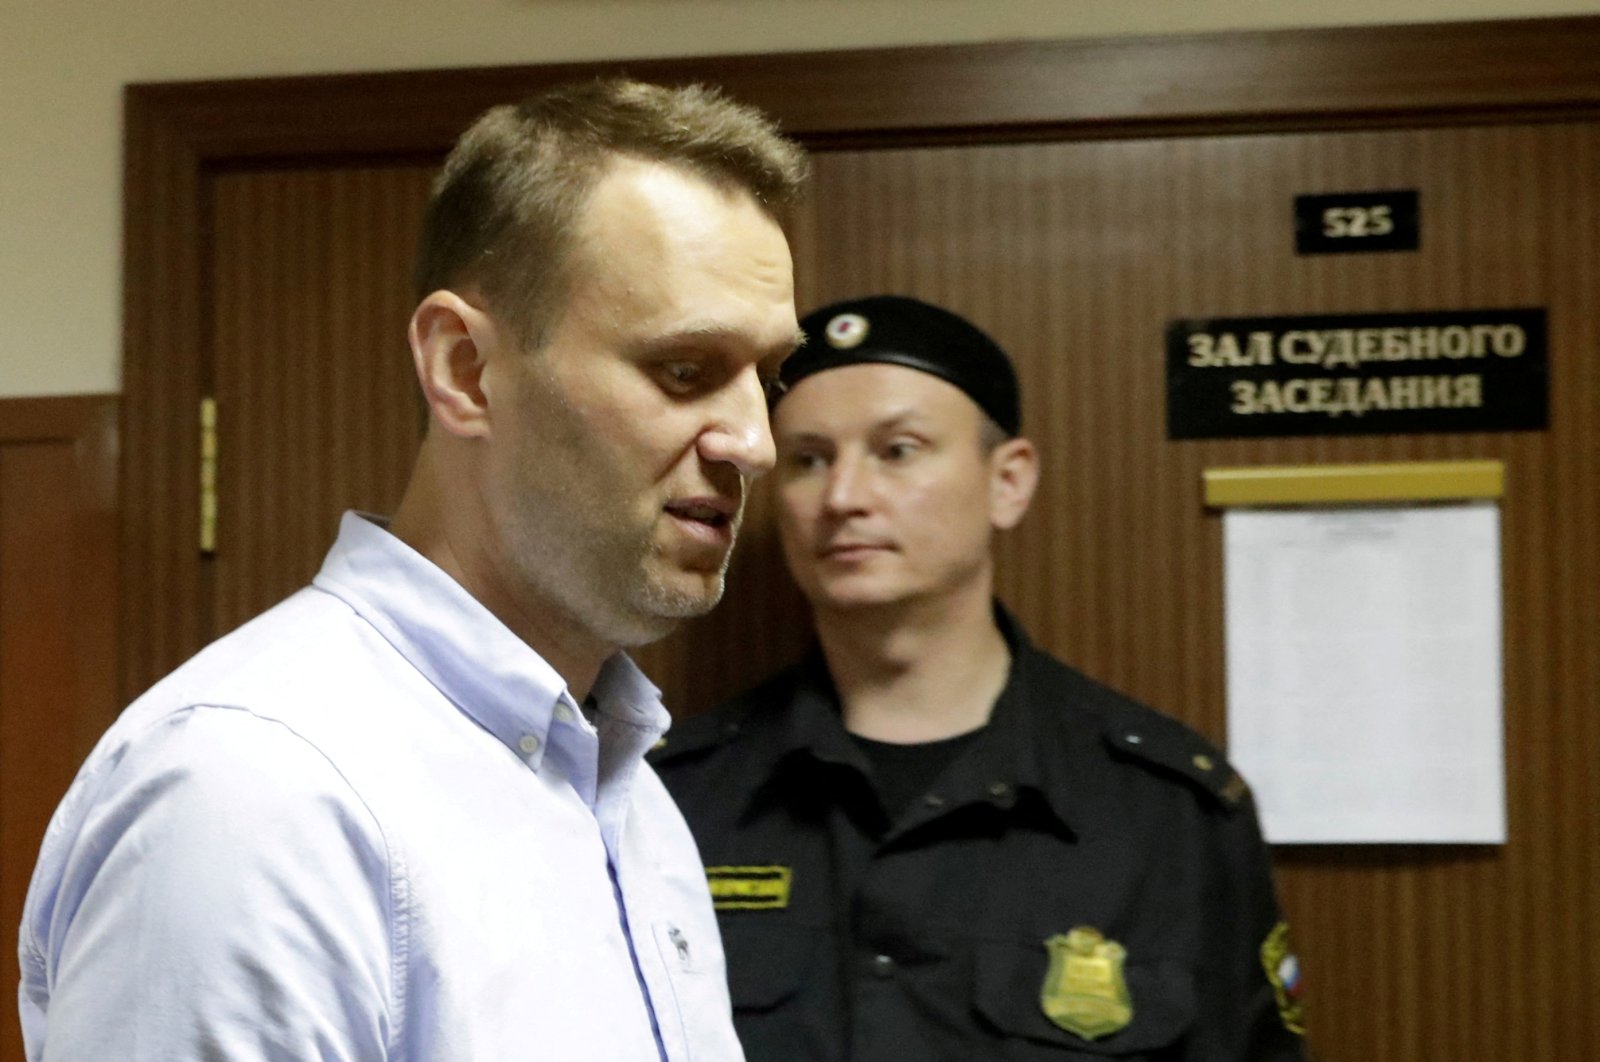 Rusia menempatkan tokoh oposisi Navalny dalam daftar teroris